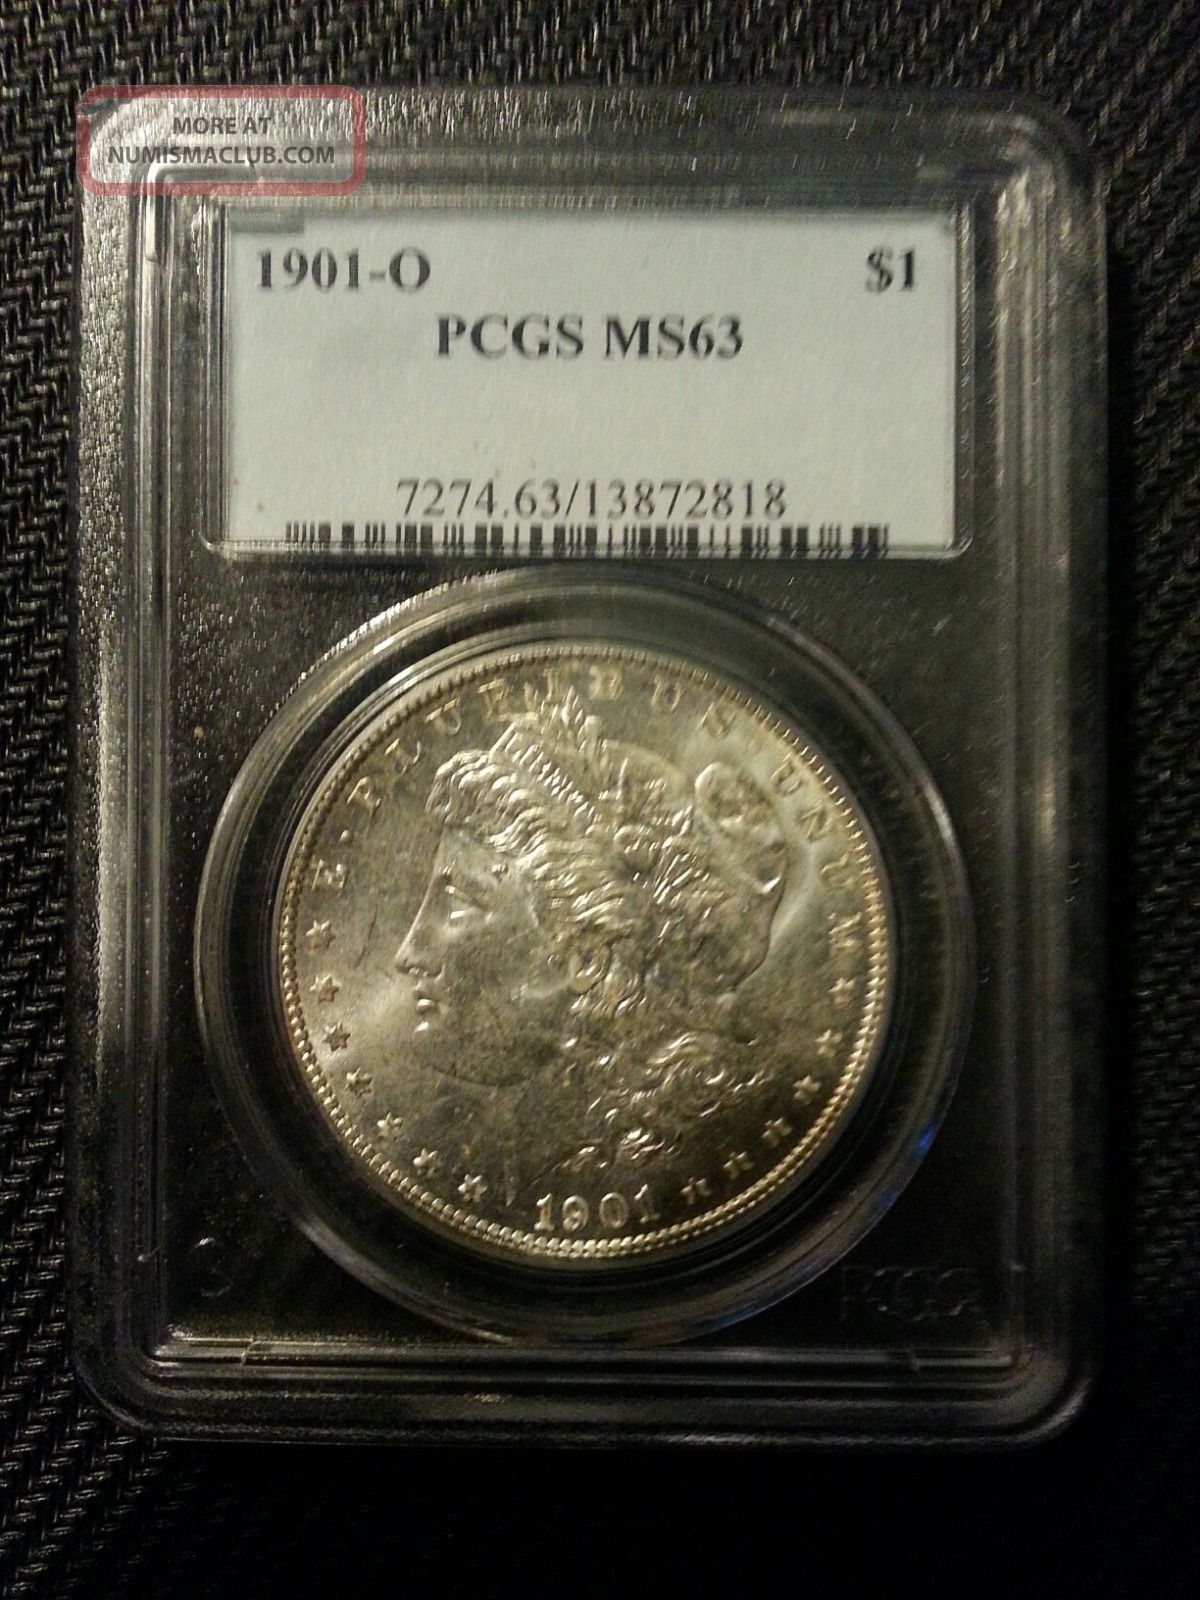 1901 - O Morgan Silver Dollar Pgcs Ms - 63